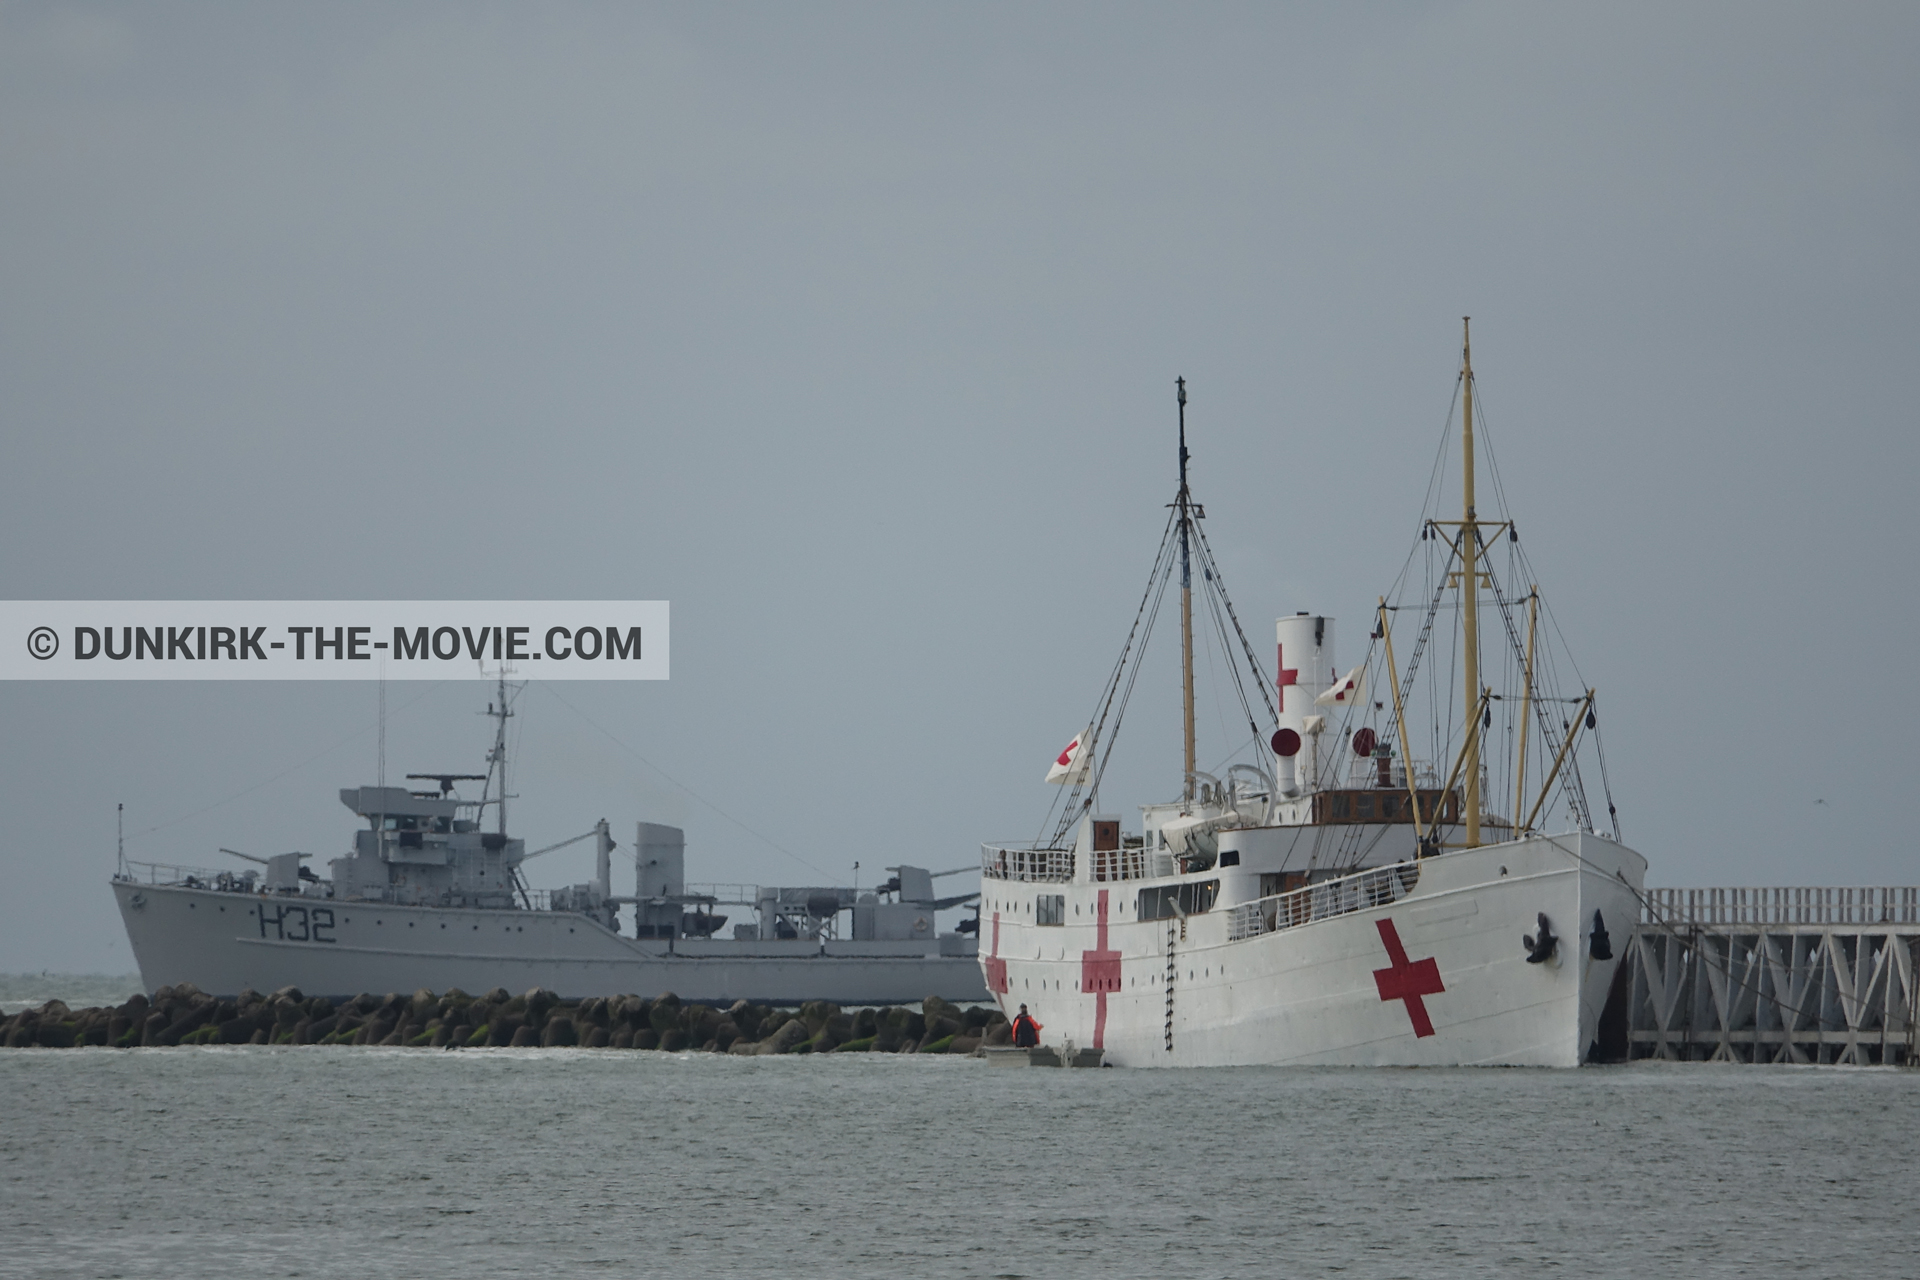 Fotos con barco, cielo gris, H32 - Hr.Ms. Sittard, muelle del ESTE, mares calma, M/S Rogaland,  durante el rodaje de la película Dunkerque de Nolan